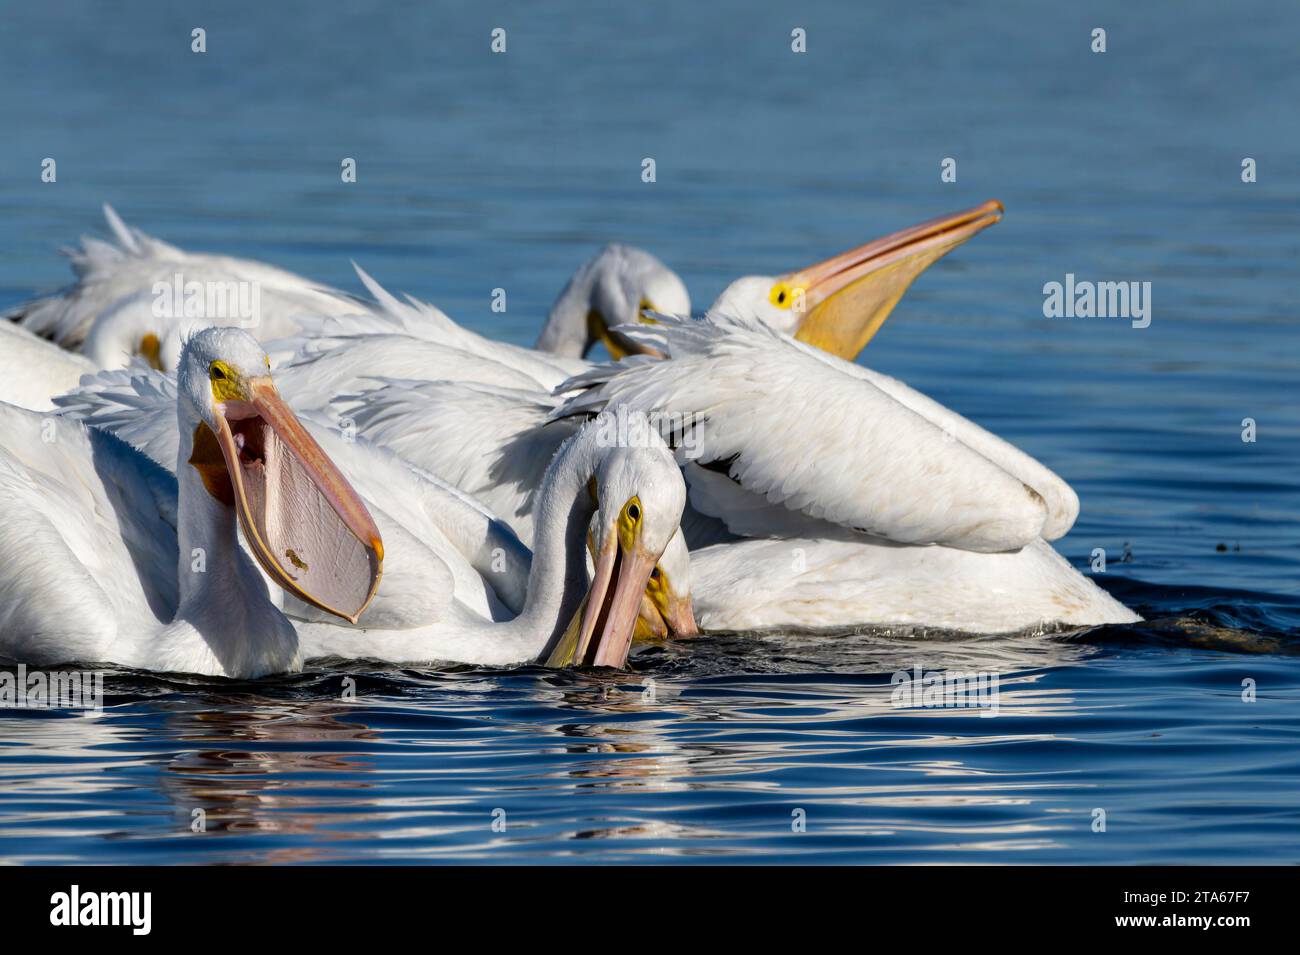 Pélican blanc américain (Pelecanus erythrorhynchos) troupeau d'adultes pêchant ensemble sur l'eau dans le marais de Magrove, île Merrit, Floride, États-Unis. Banque D'Images